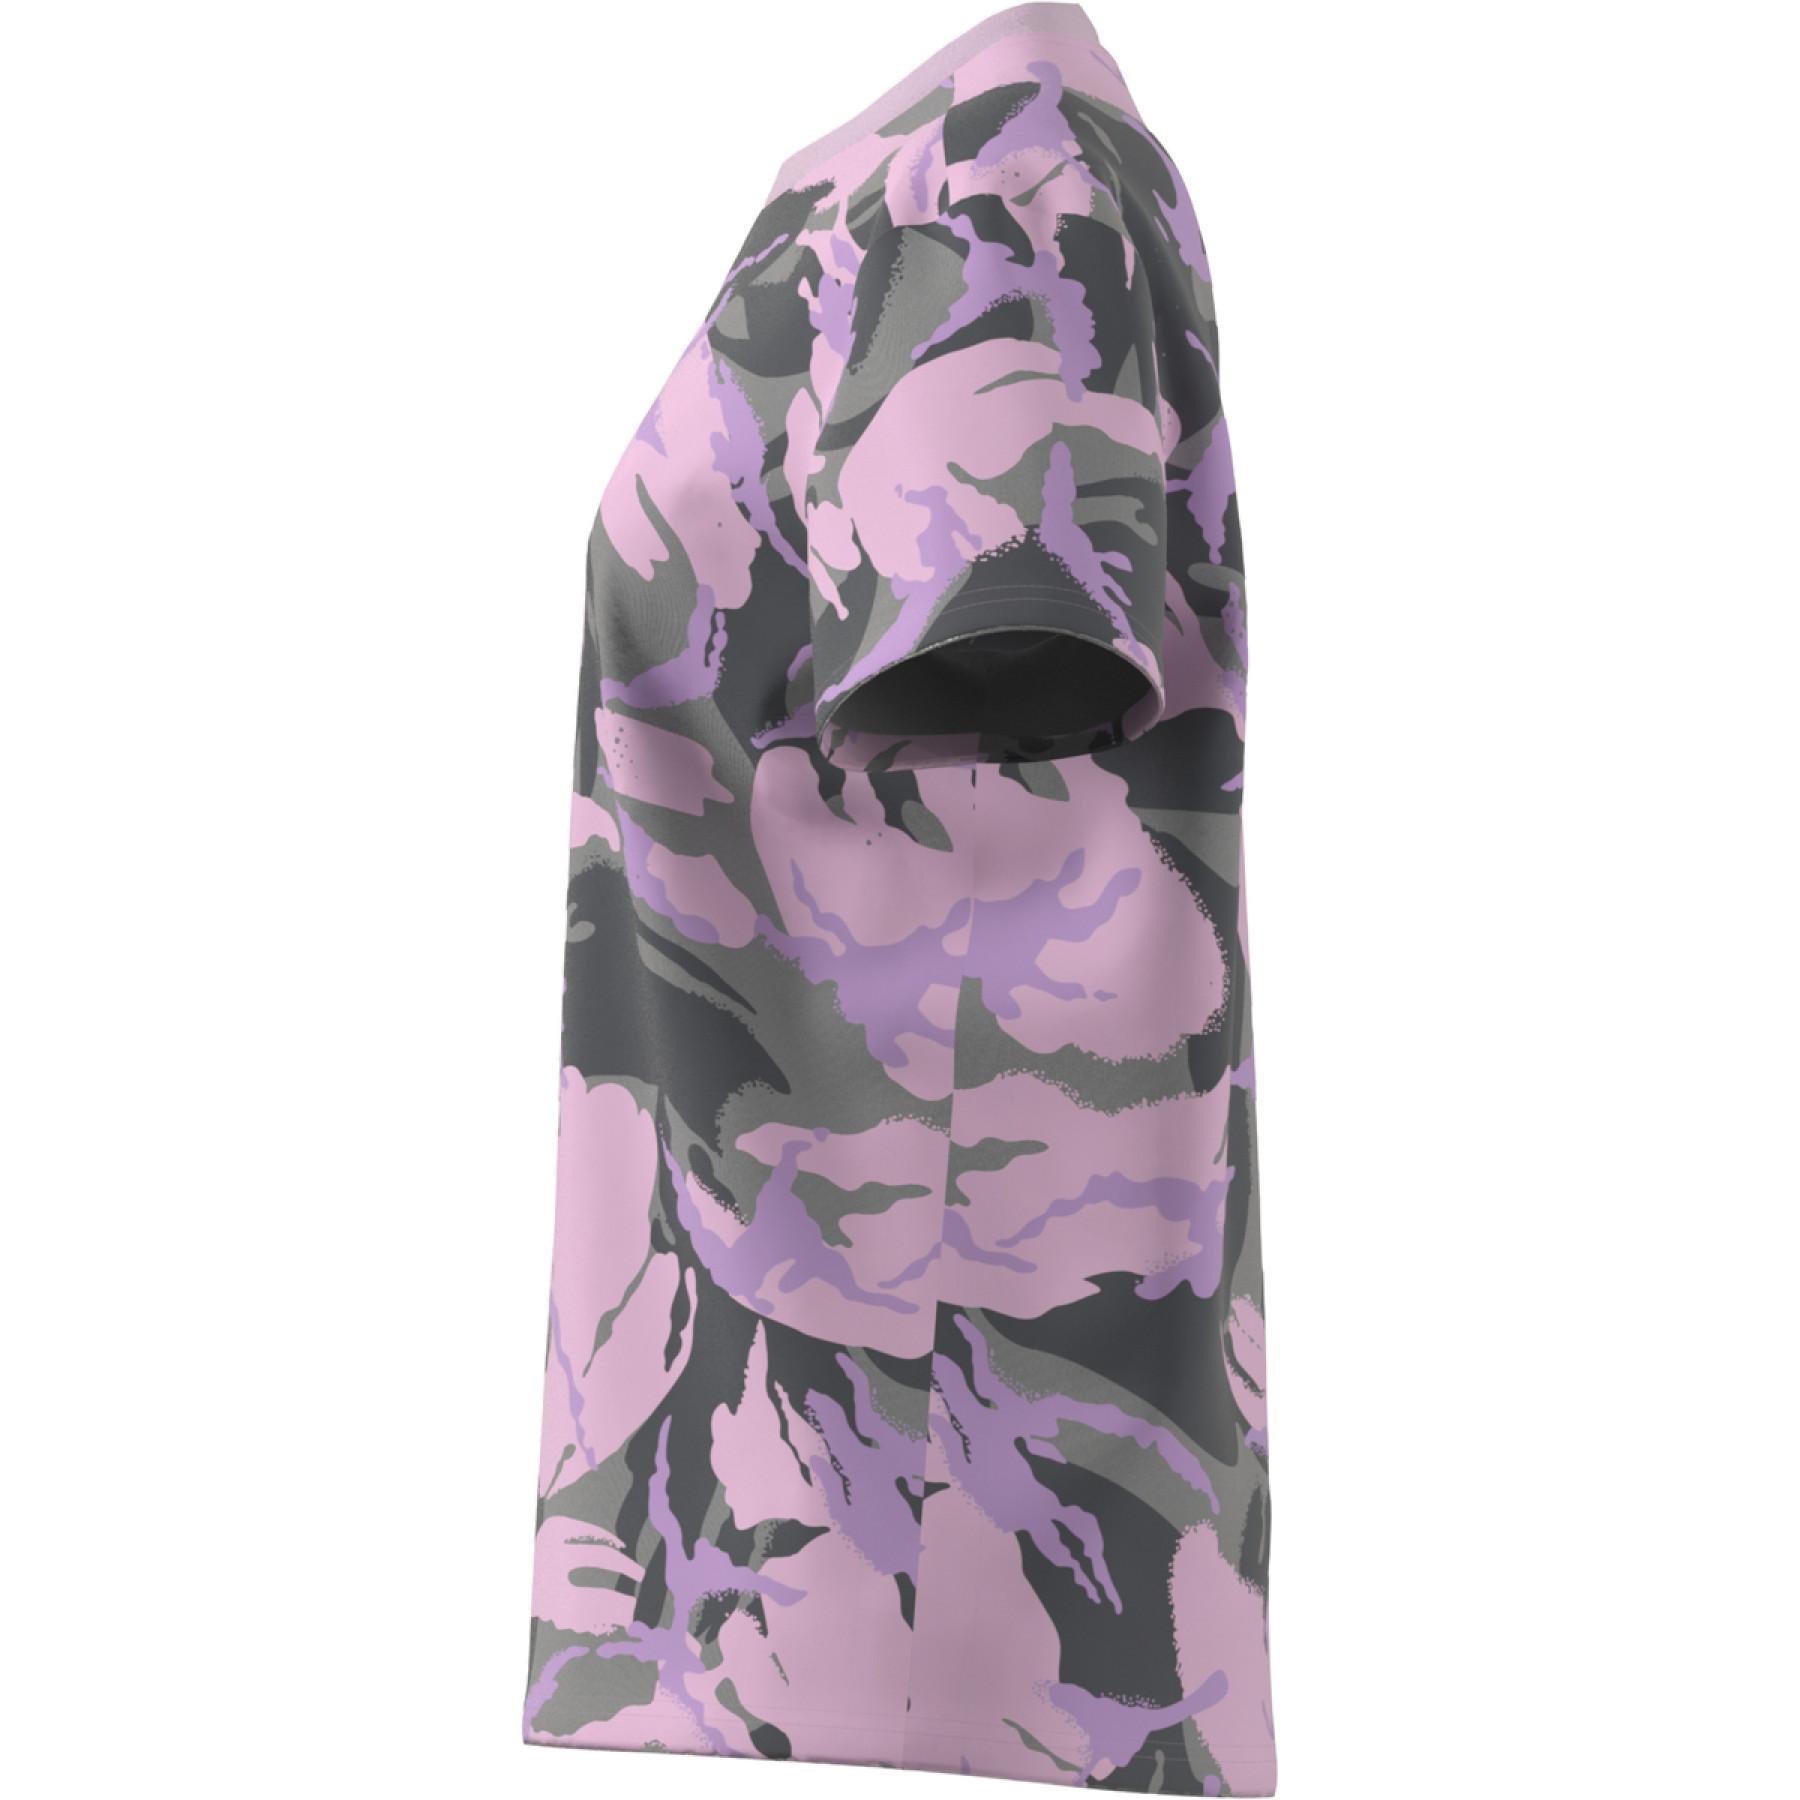 T-shirt femme adidas Essentials Boyfriend Camouflage